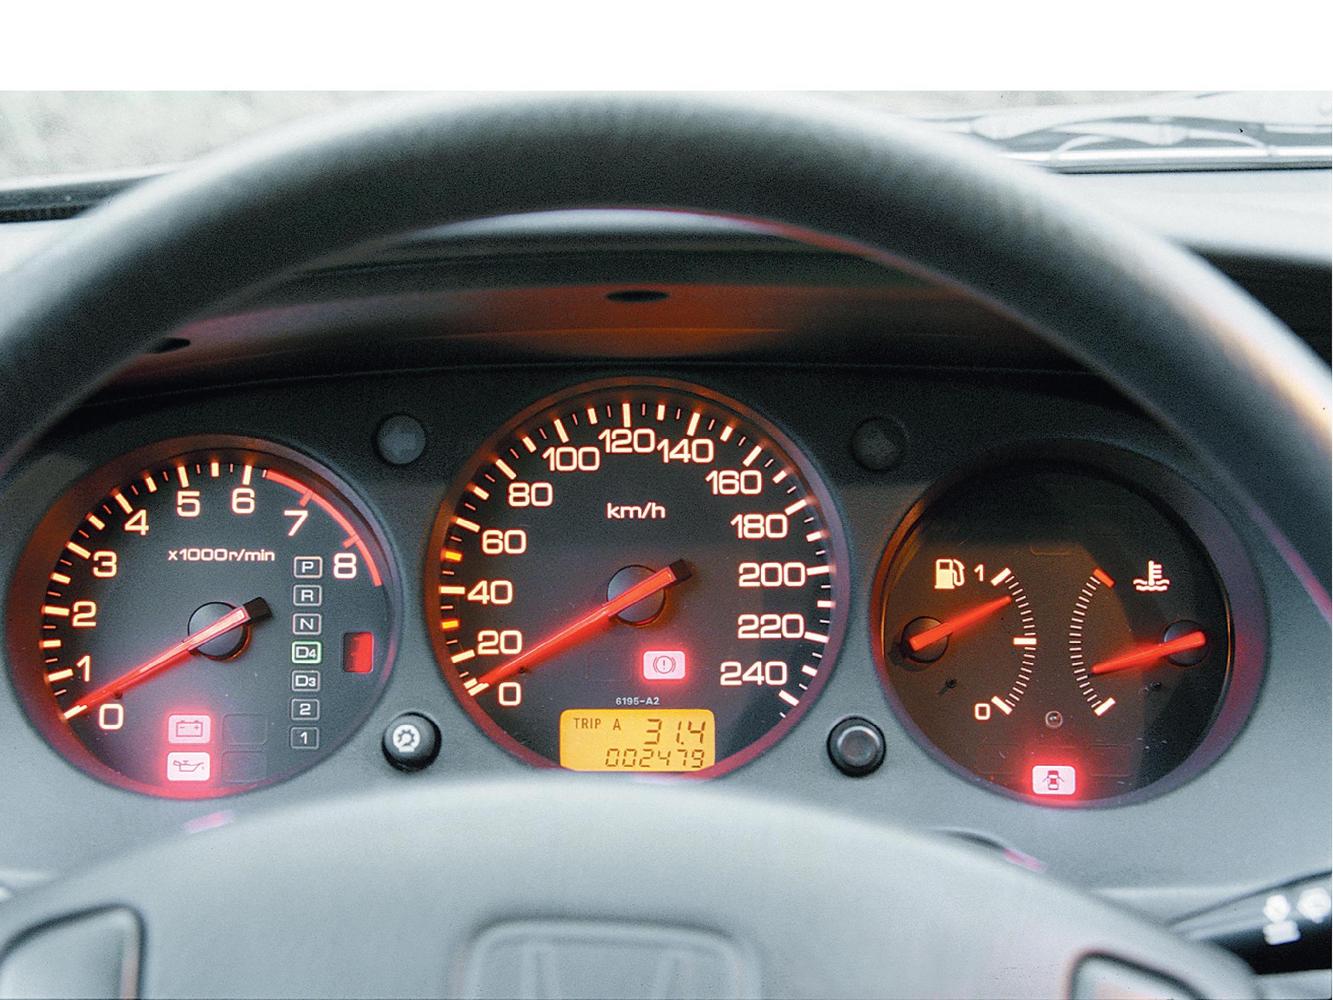 седан Honda Accord 1998 - 2002г выпуска модификация 1.6 MT (115 л.с.)